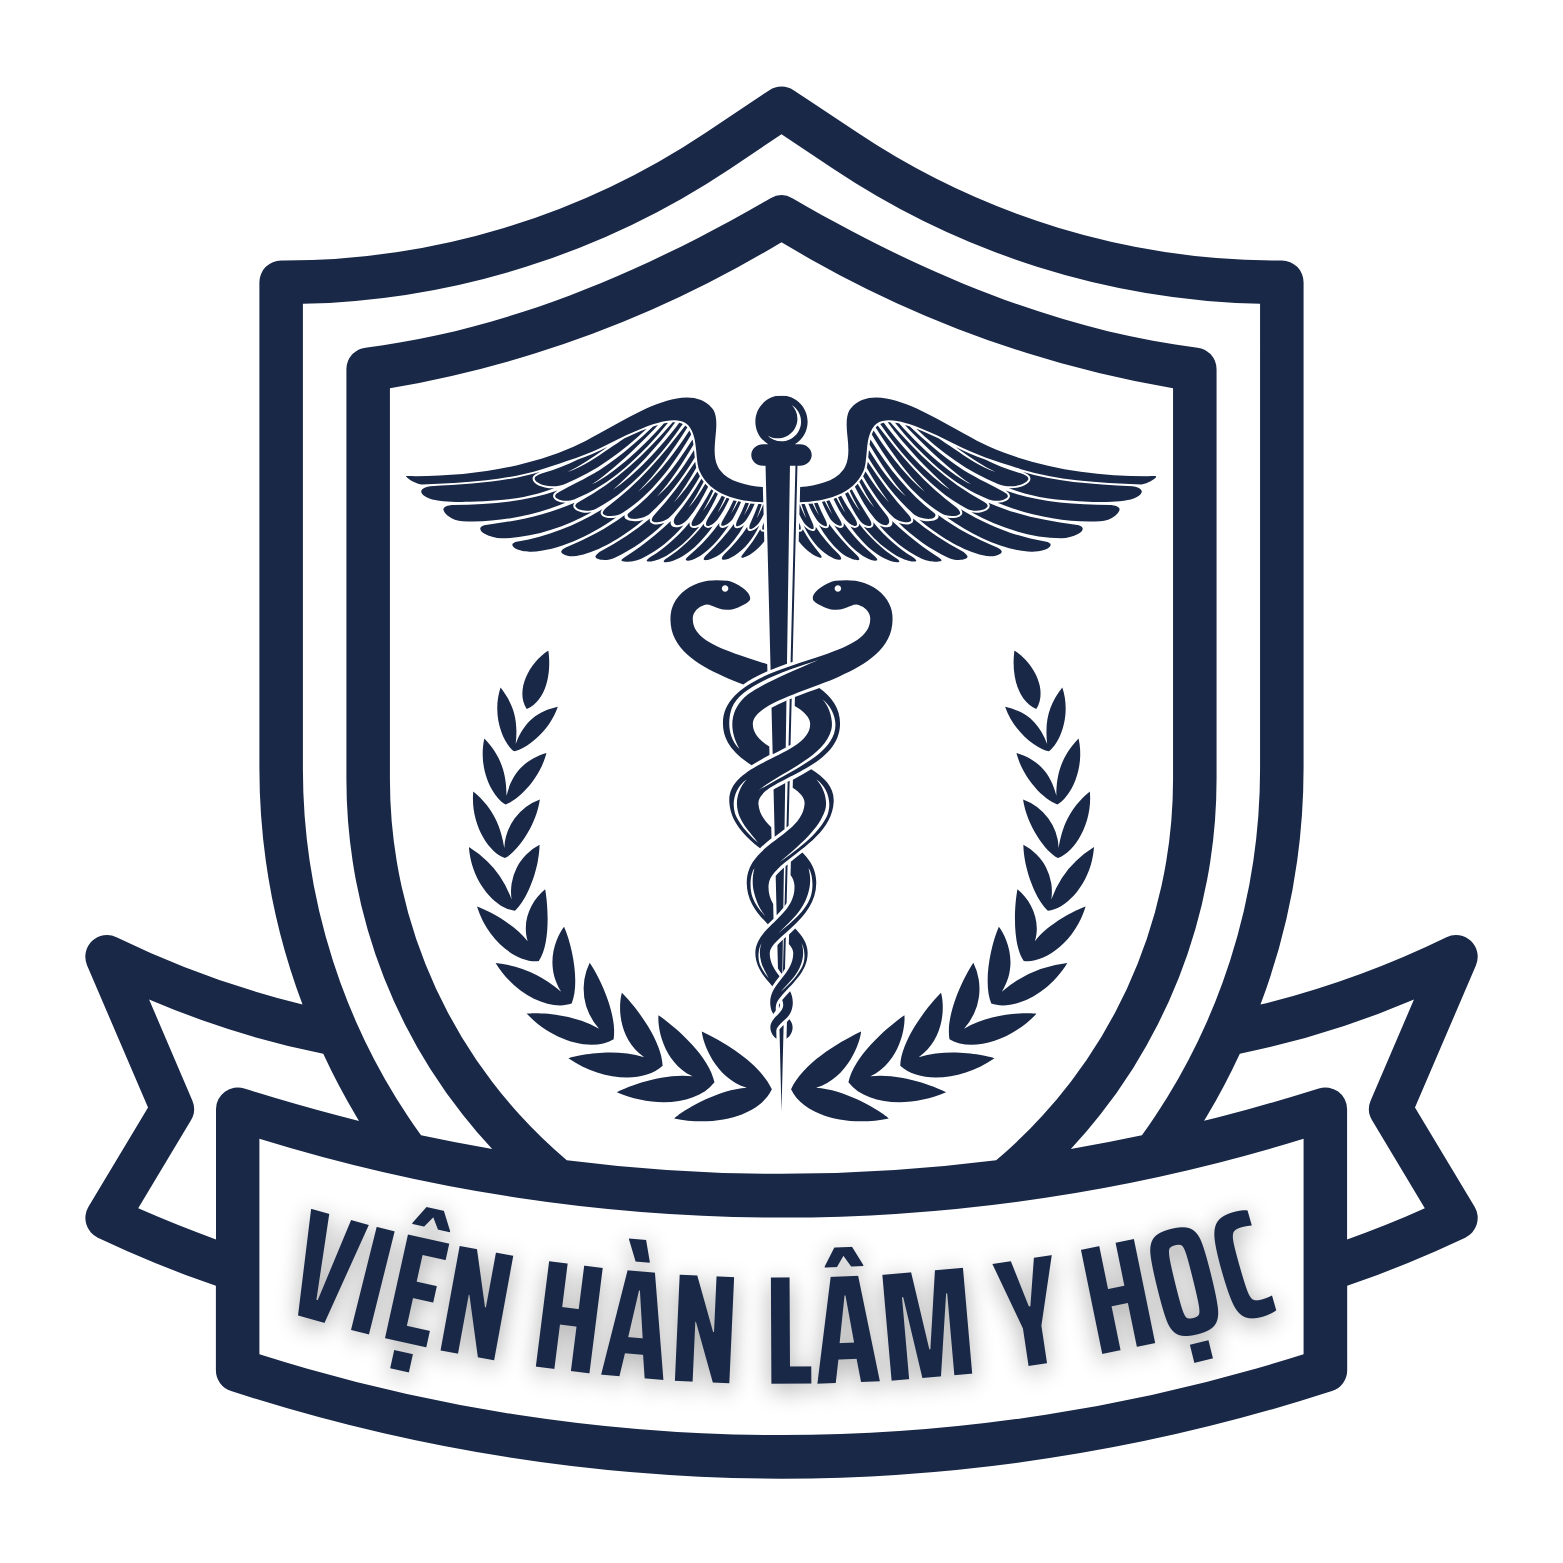 Logo chính thức của Viện Hàn Lâm Y Học bao gồm những họa tiết mang tính biểu tượng của học thuật và với một phong cách hàn lâm.